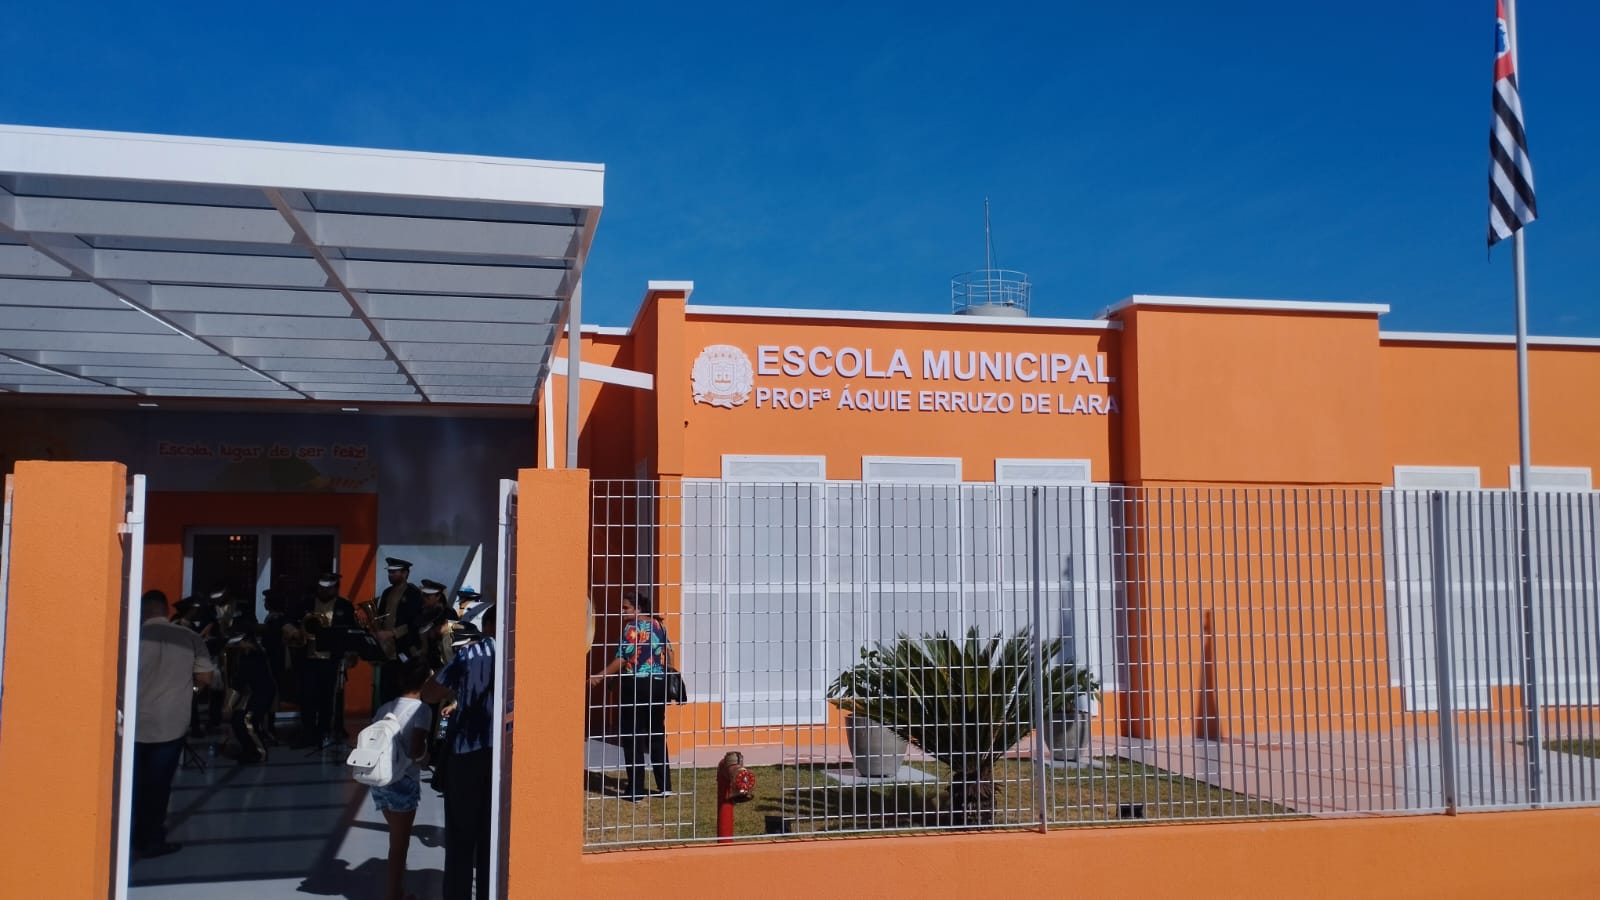 Inaugurada em Guararema a escola que homenageia a professora Áquie Erruzo de Lara